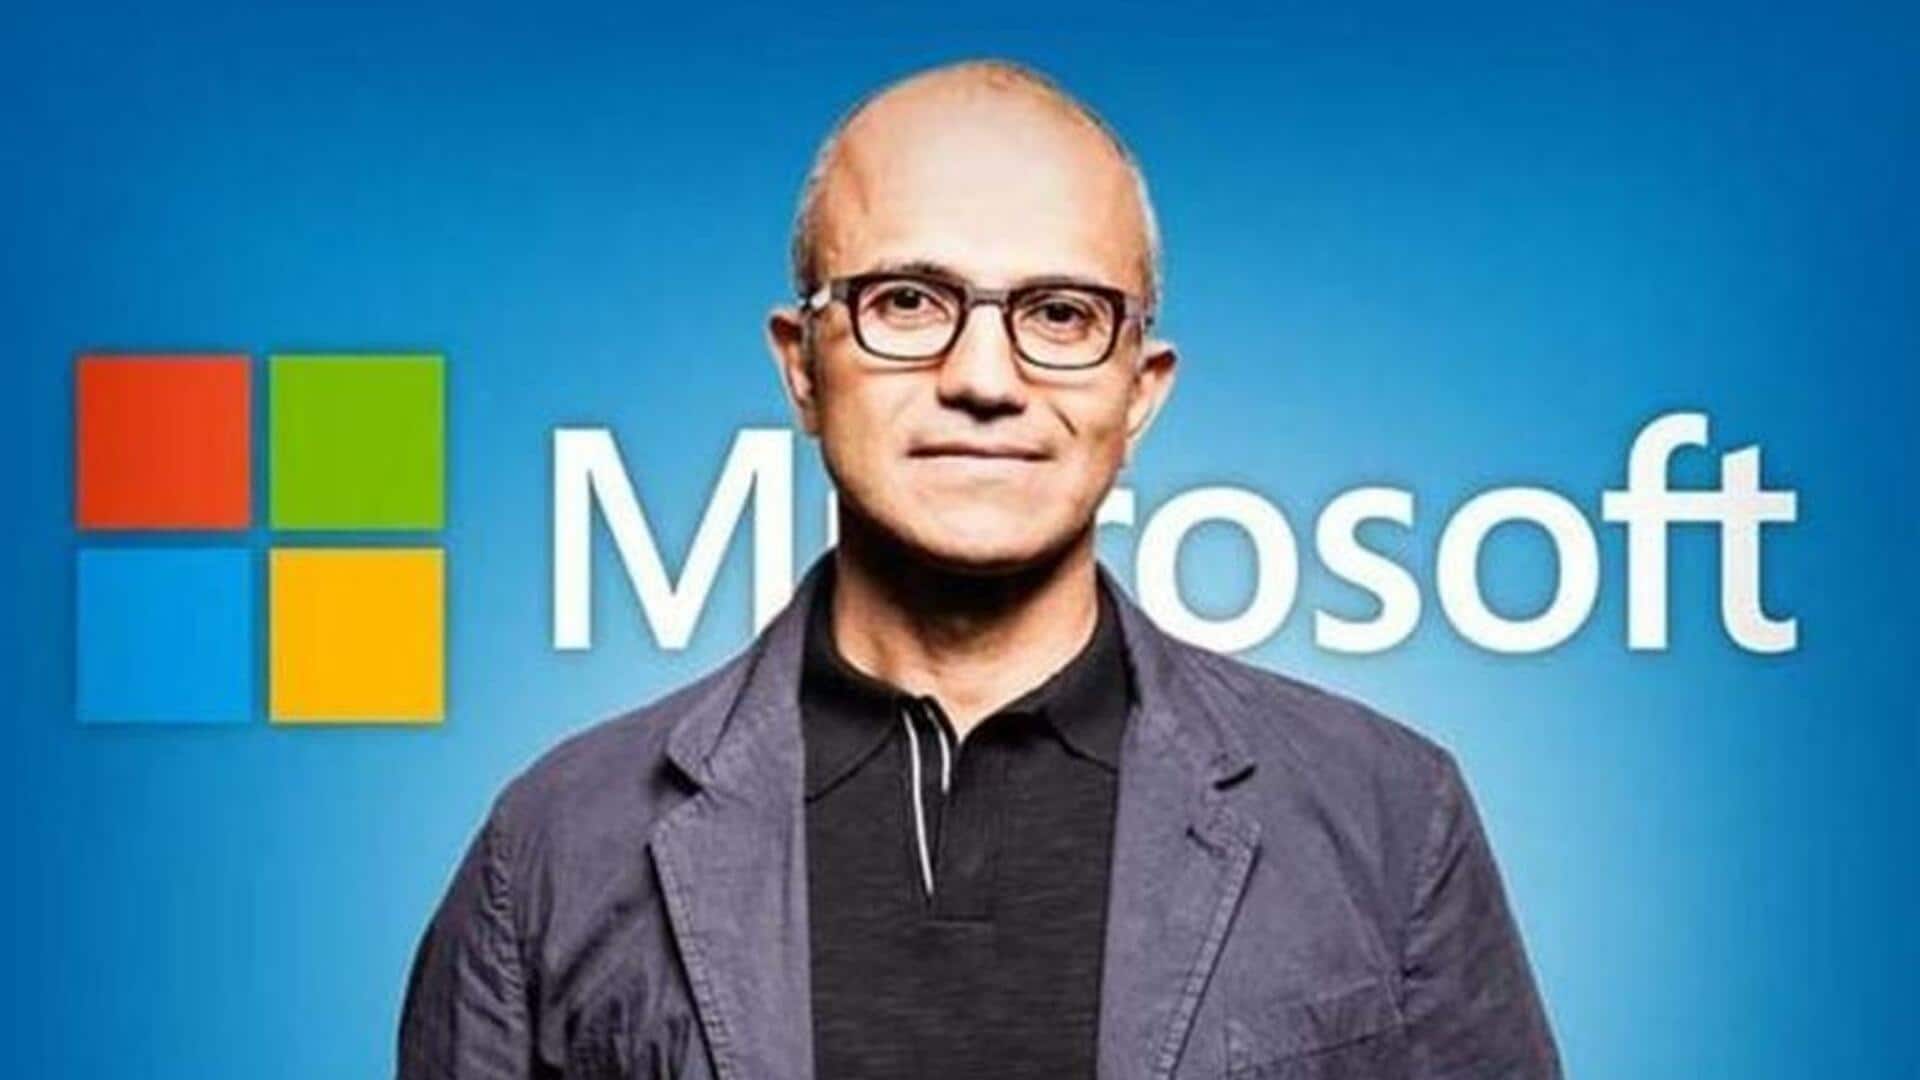 माइक्रोसॉफ्ट CEO सत्य नडेला का वेतन 300 करोड़ रुपये सालाना से ज्यादा, जानिए उनकी संपत्ति